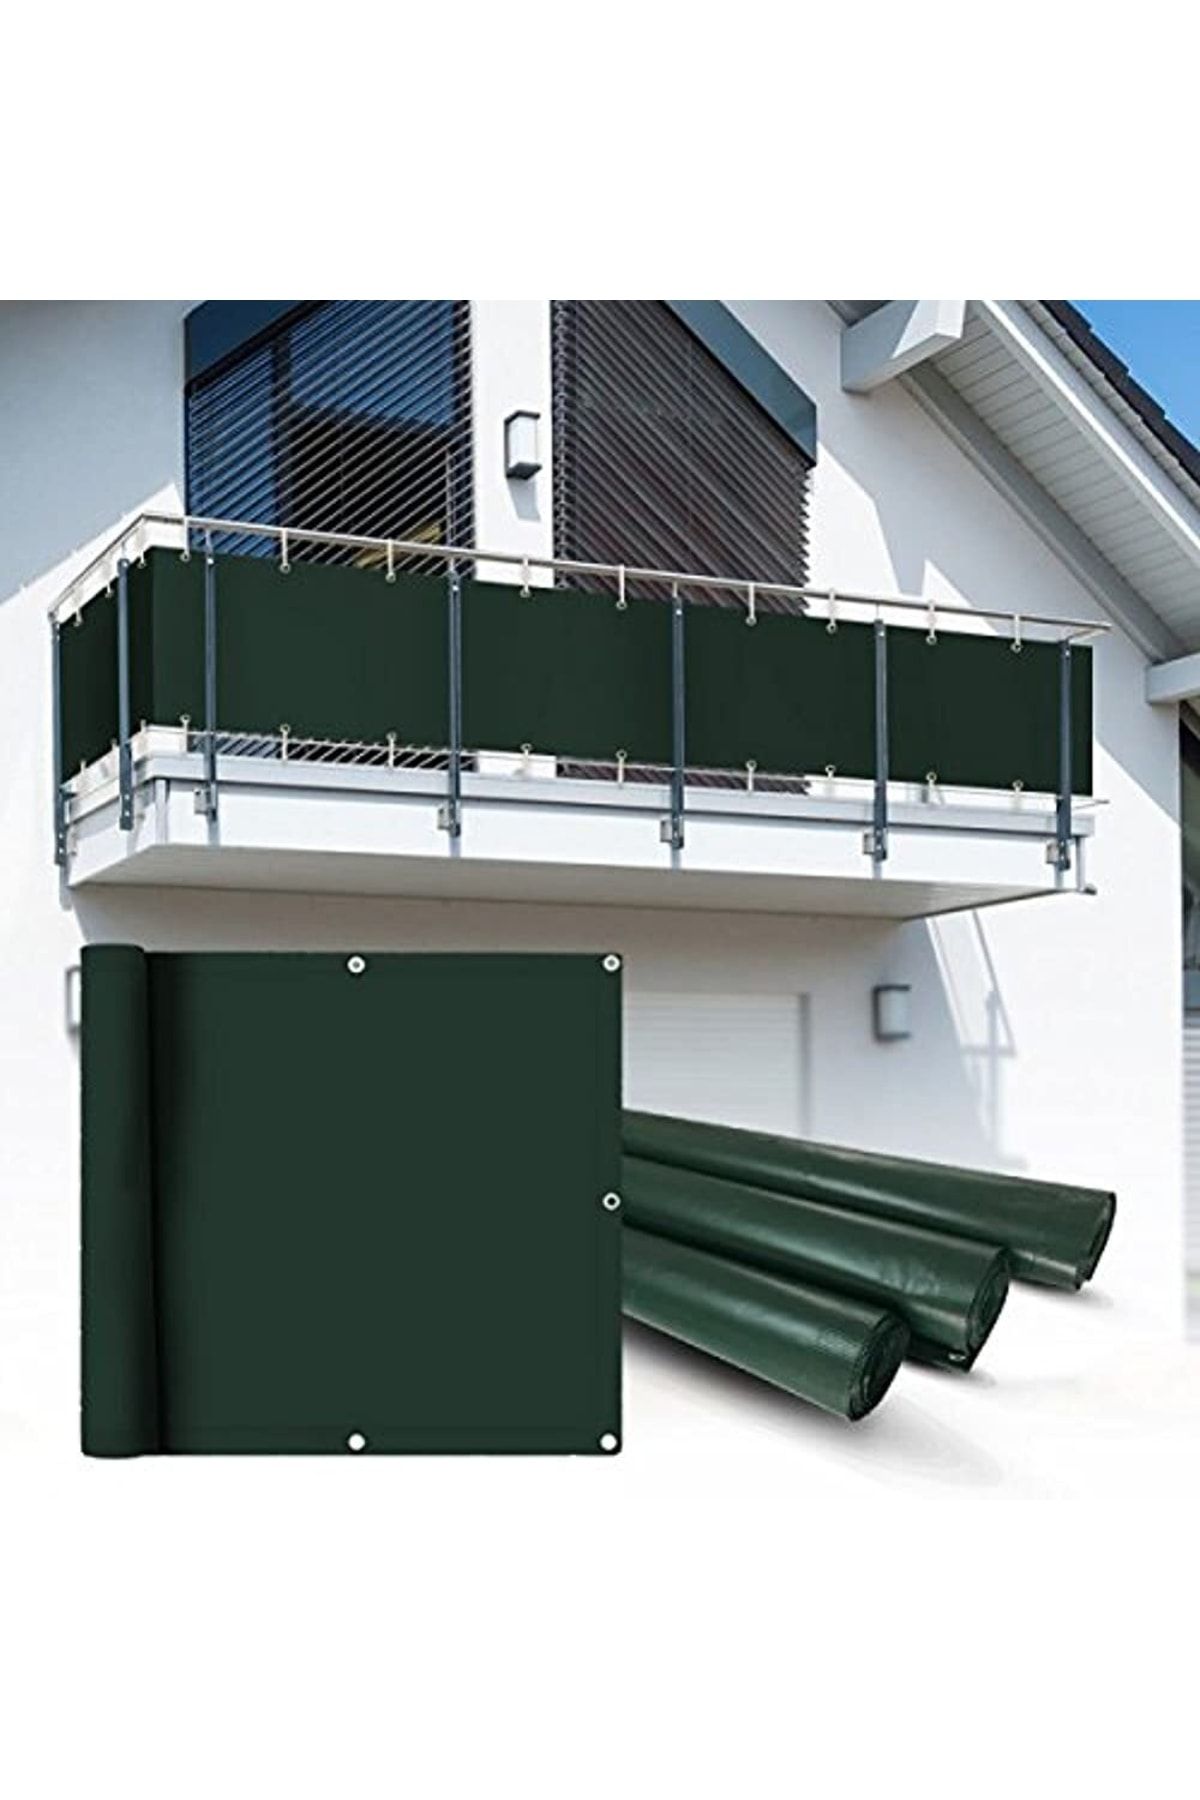 Балконный экран. Экраны для балконных ограждений. Экраны для балконных балюстрад. Защитный экран для балкона. Защитный экран балконные ограждения.